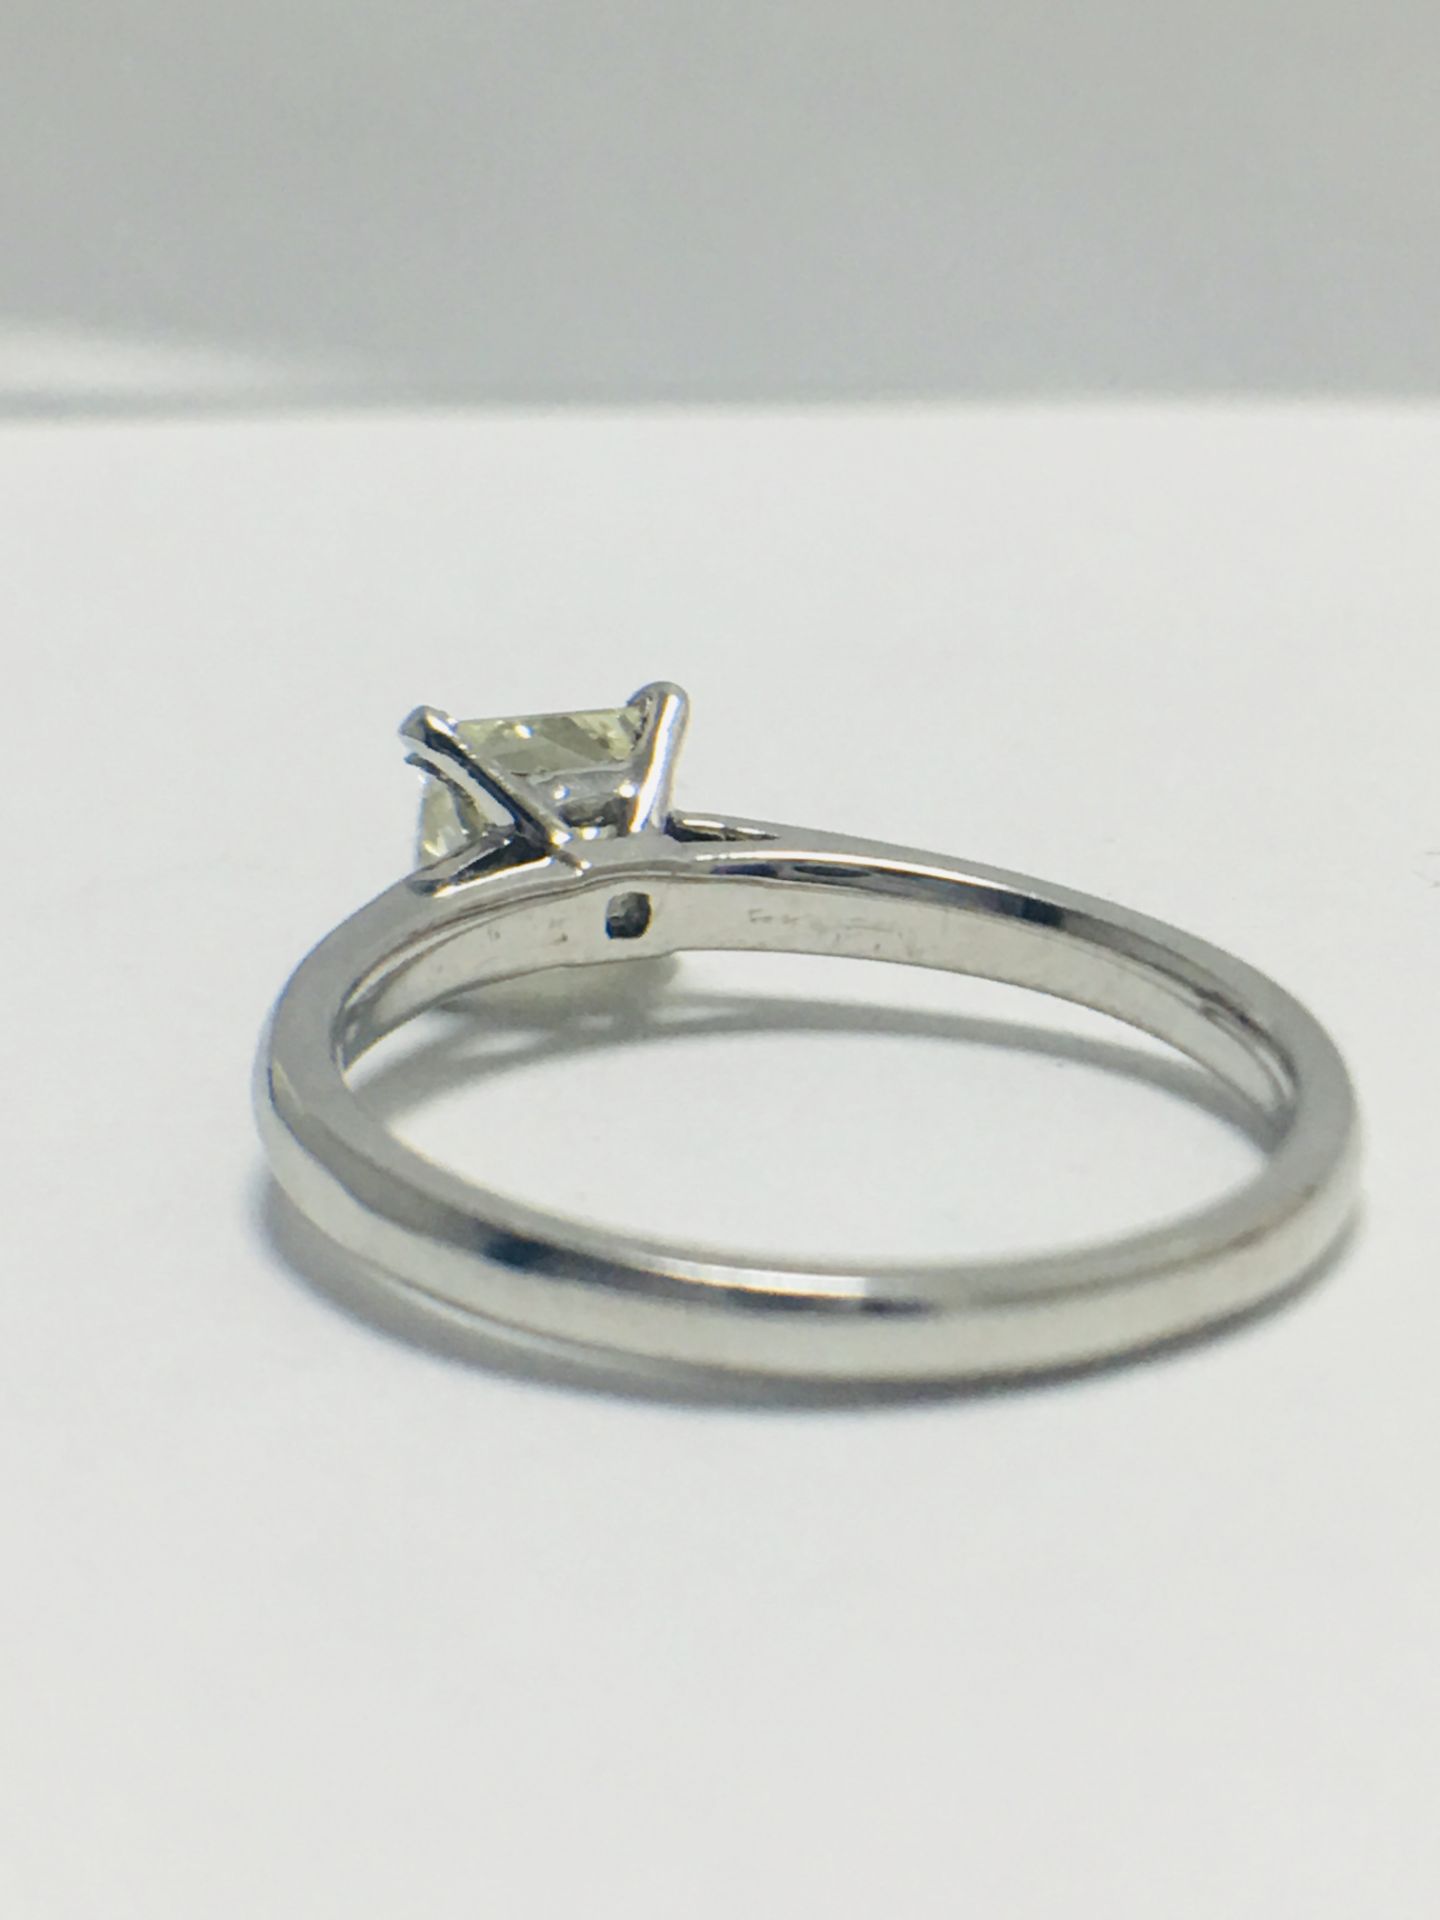 1ct Platinum Diamond Solitaire Ring - Image 4 of 8